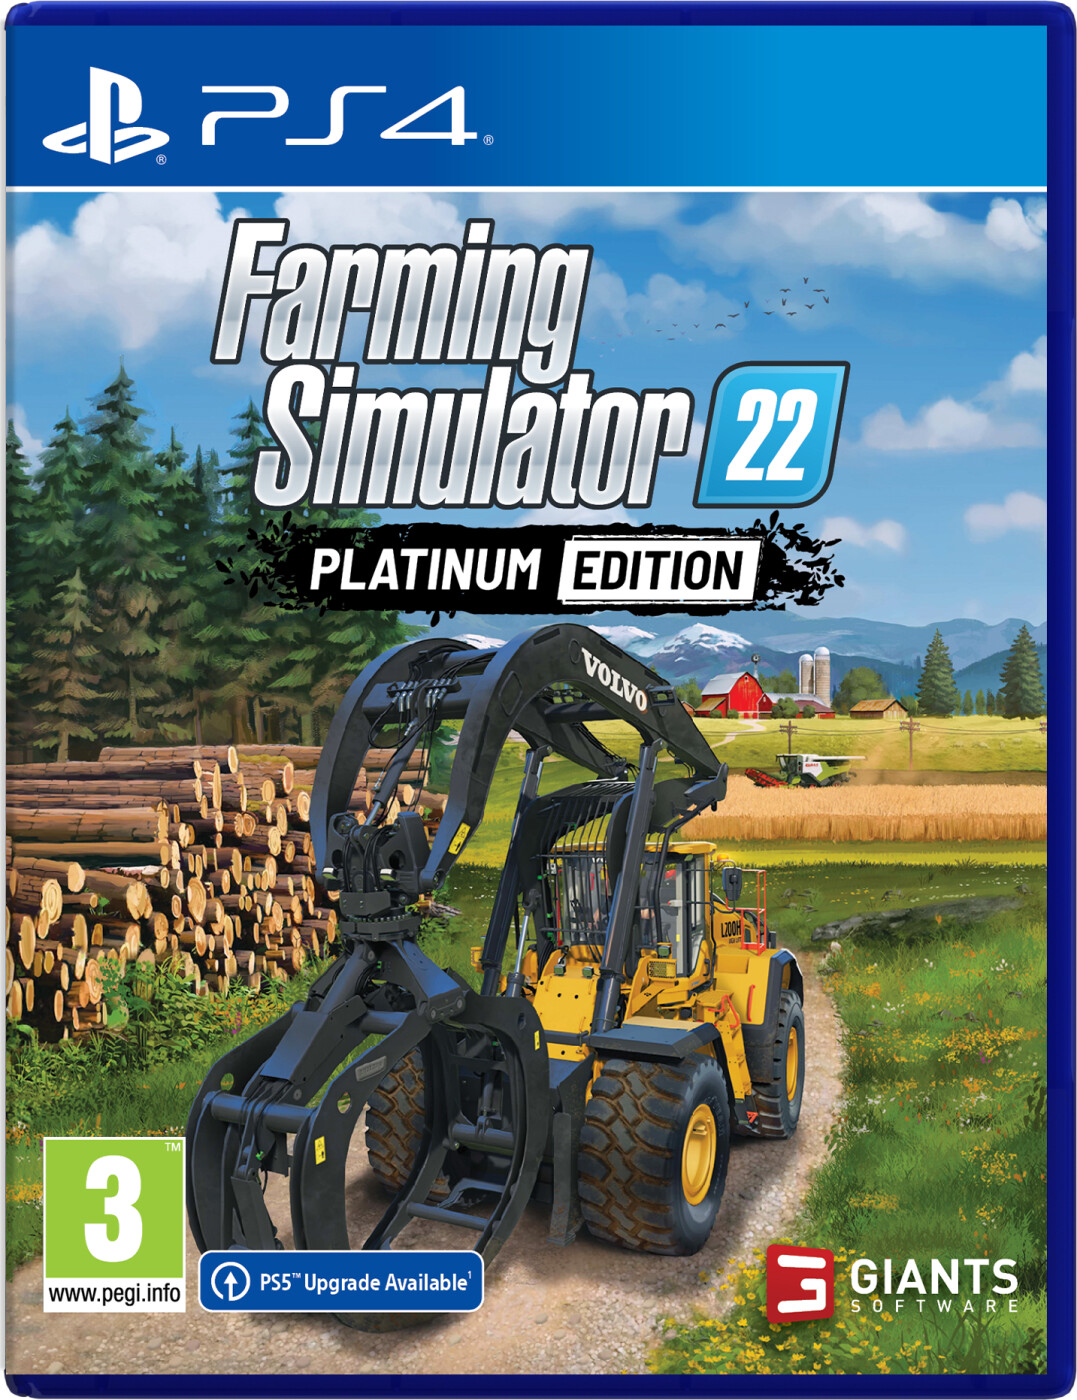 Farming Simulator 22 - Platinum Edition → Køb billigt her - Gucca.dk